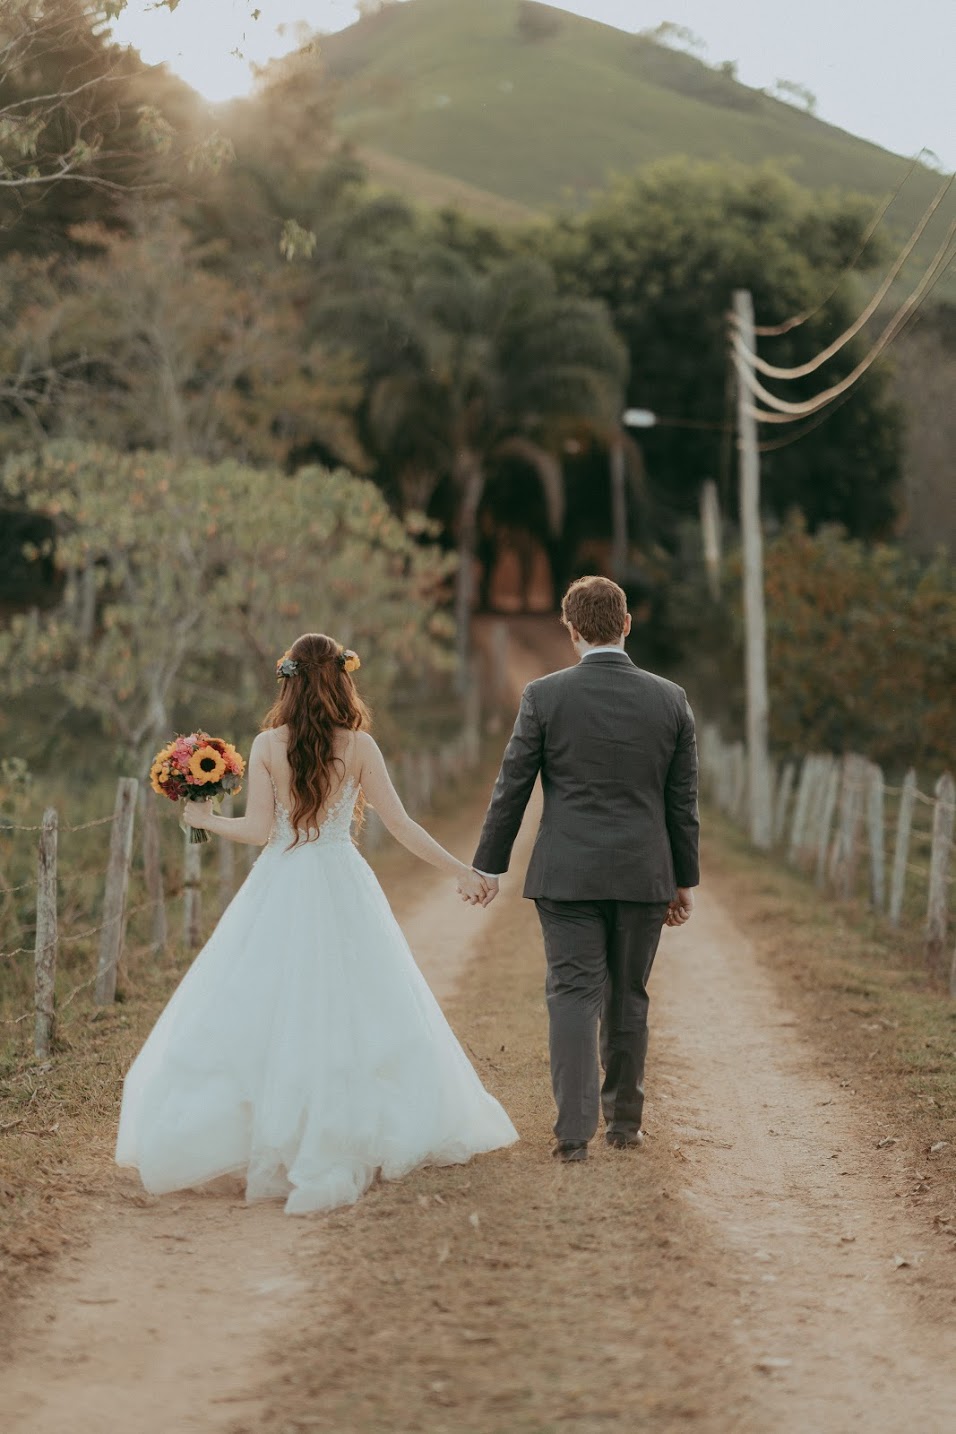 Destination wedding colorido e vibrante no meio da natureza em Minas Gerais &#8211; Jéssica &#038; Nathan